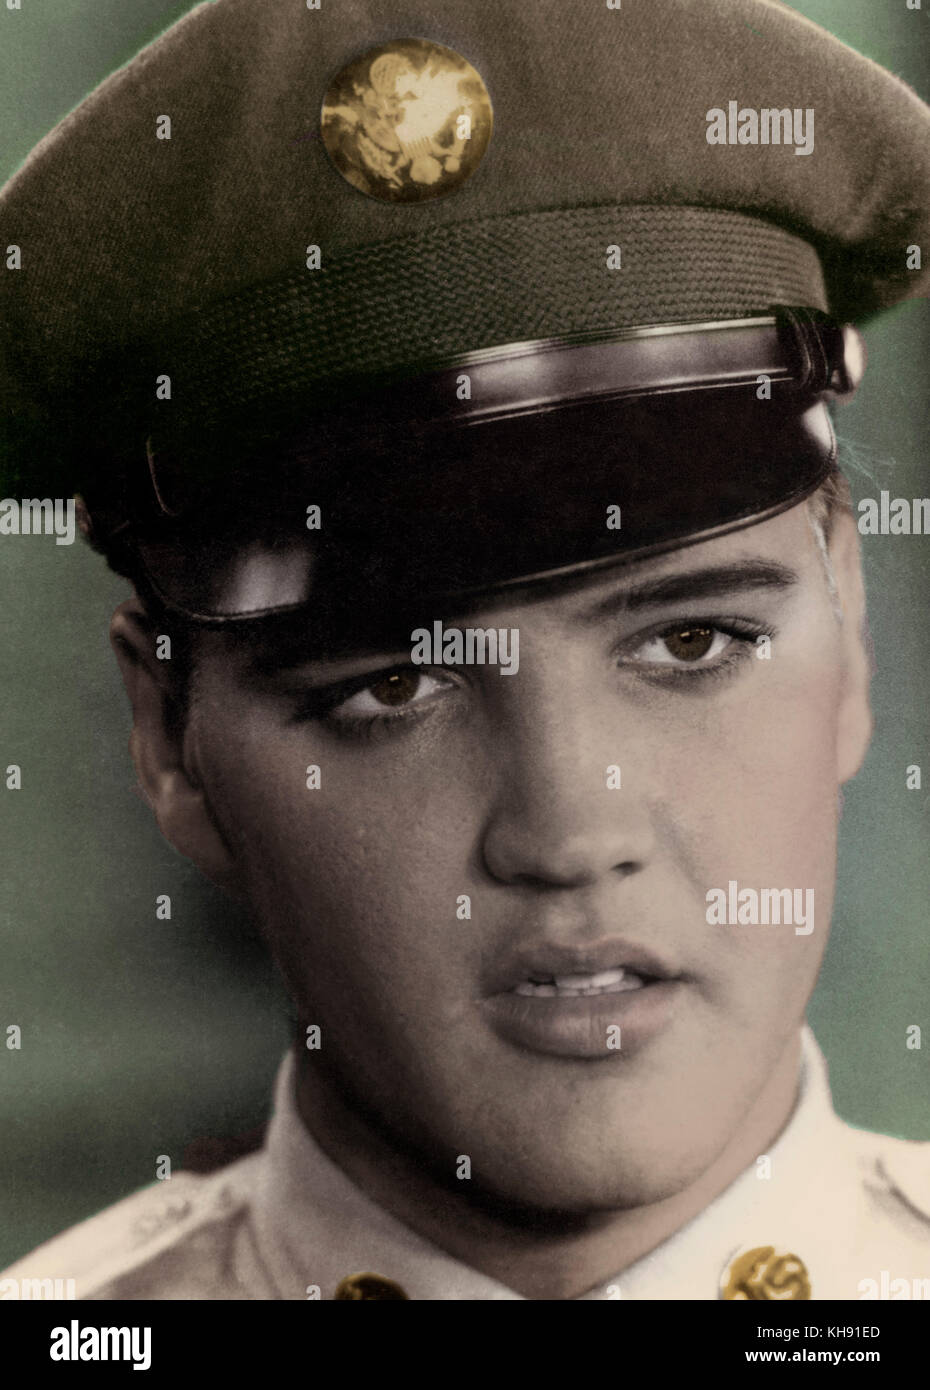 Elvis Aaron PRESLEY als GI, Portrait. Us-amerikanischer Sänger und Schauspieler. Vom 8. Januar 1935 - 16. August 1977 Stockfoto